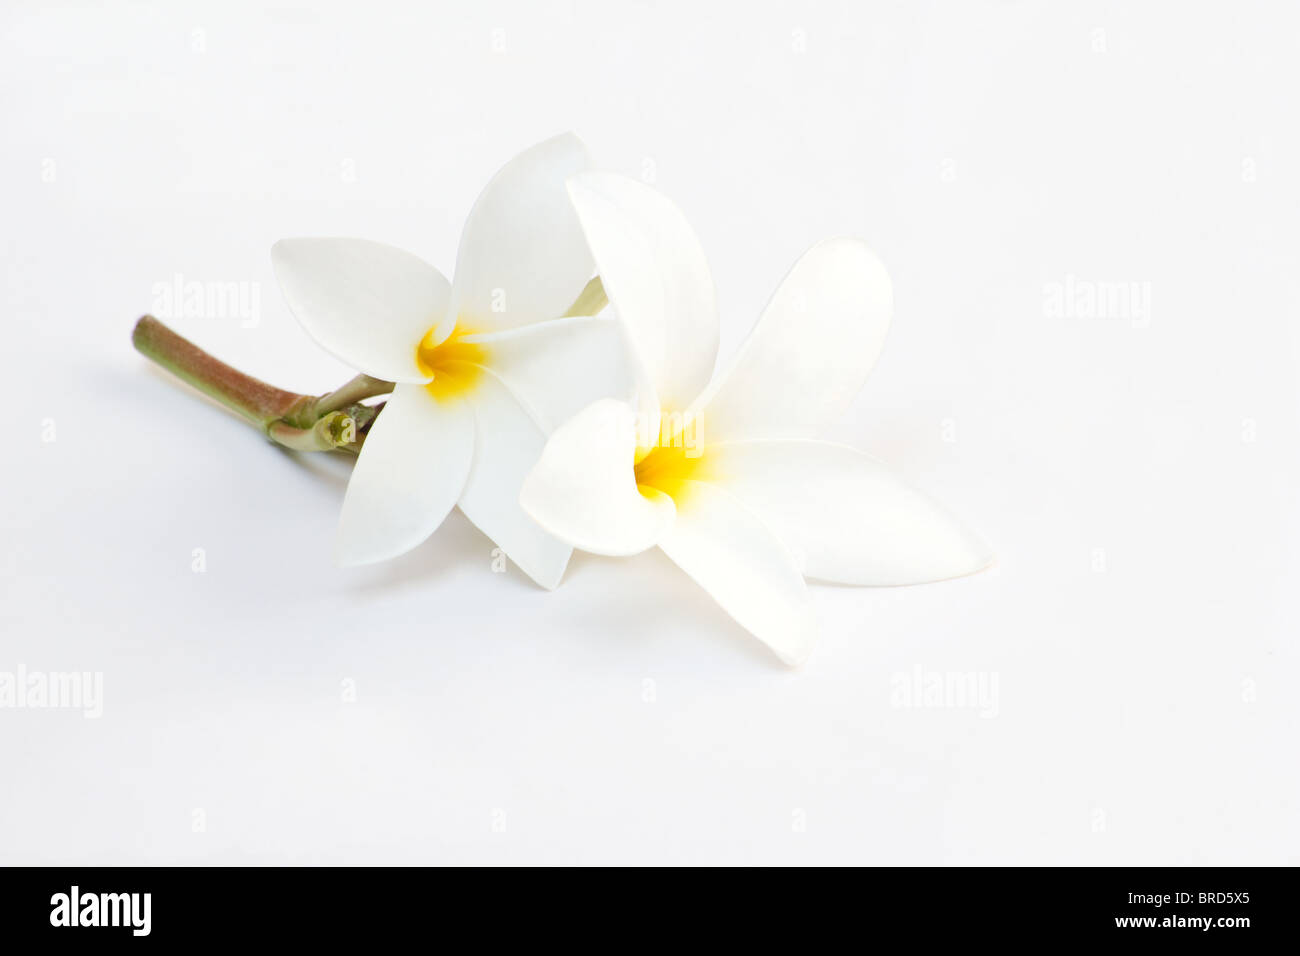 Jasmine flowers close-up on white background Stock Photo